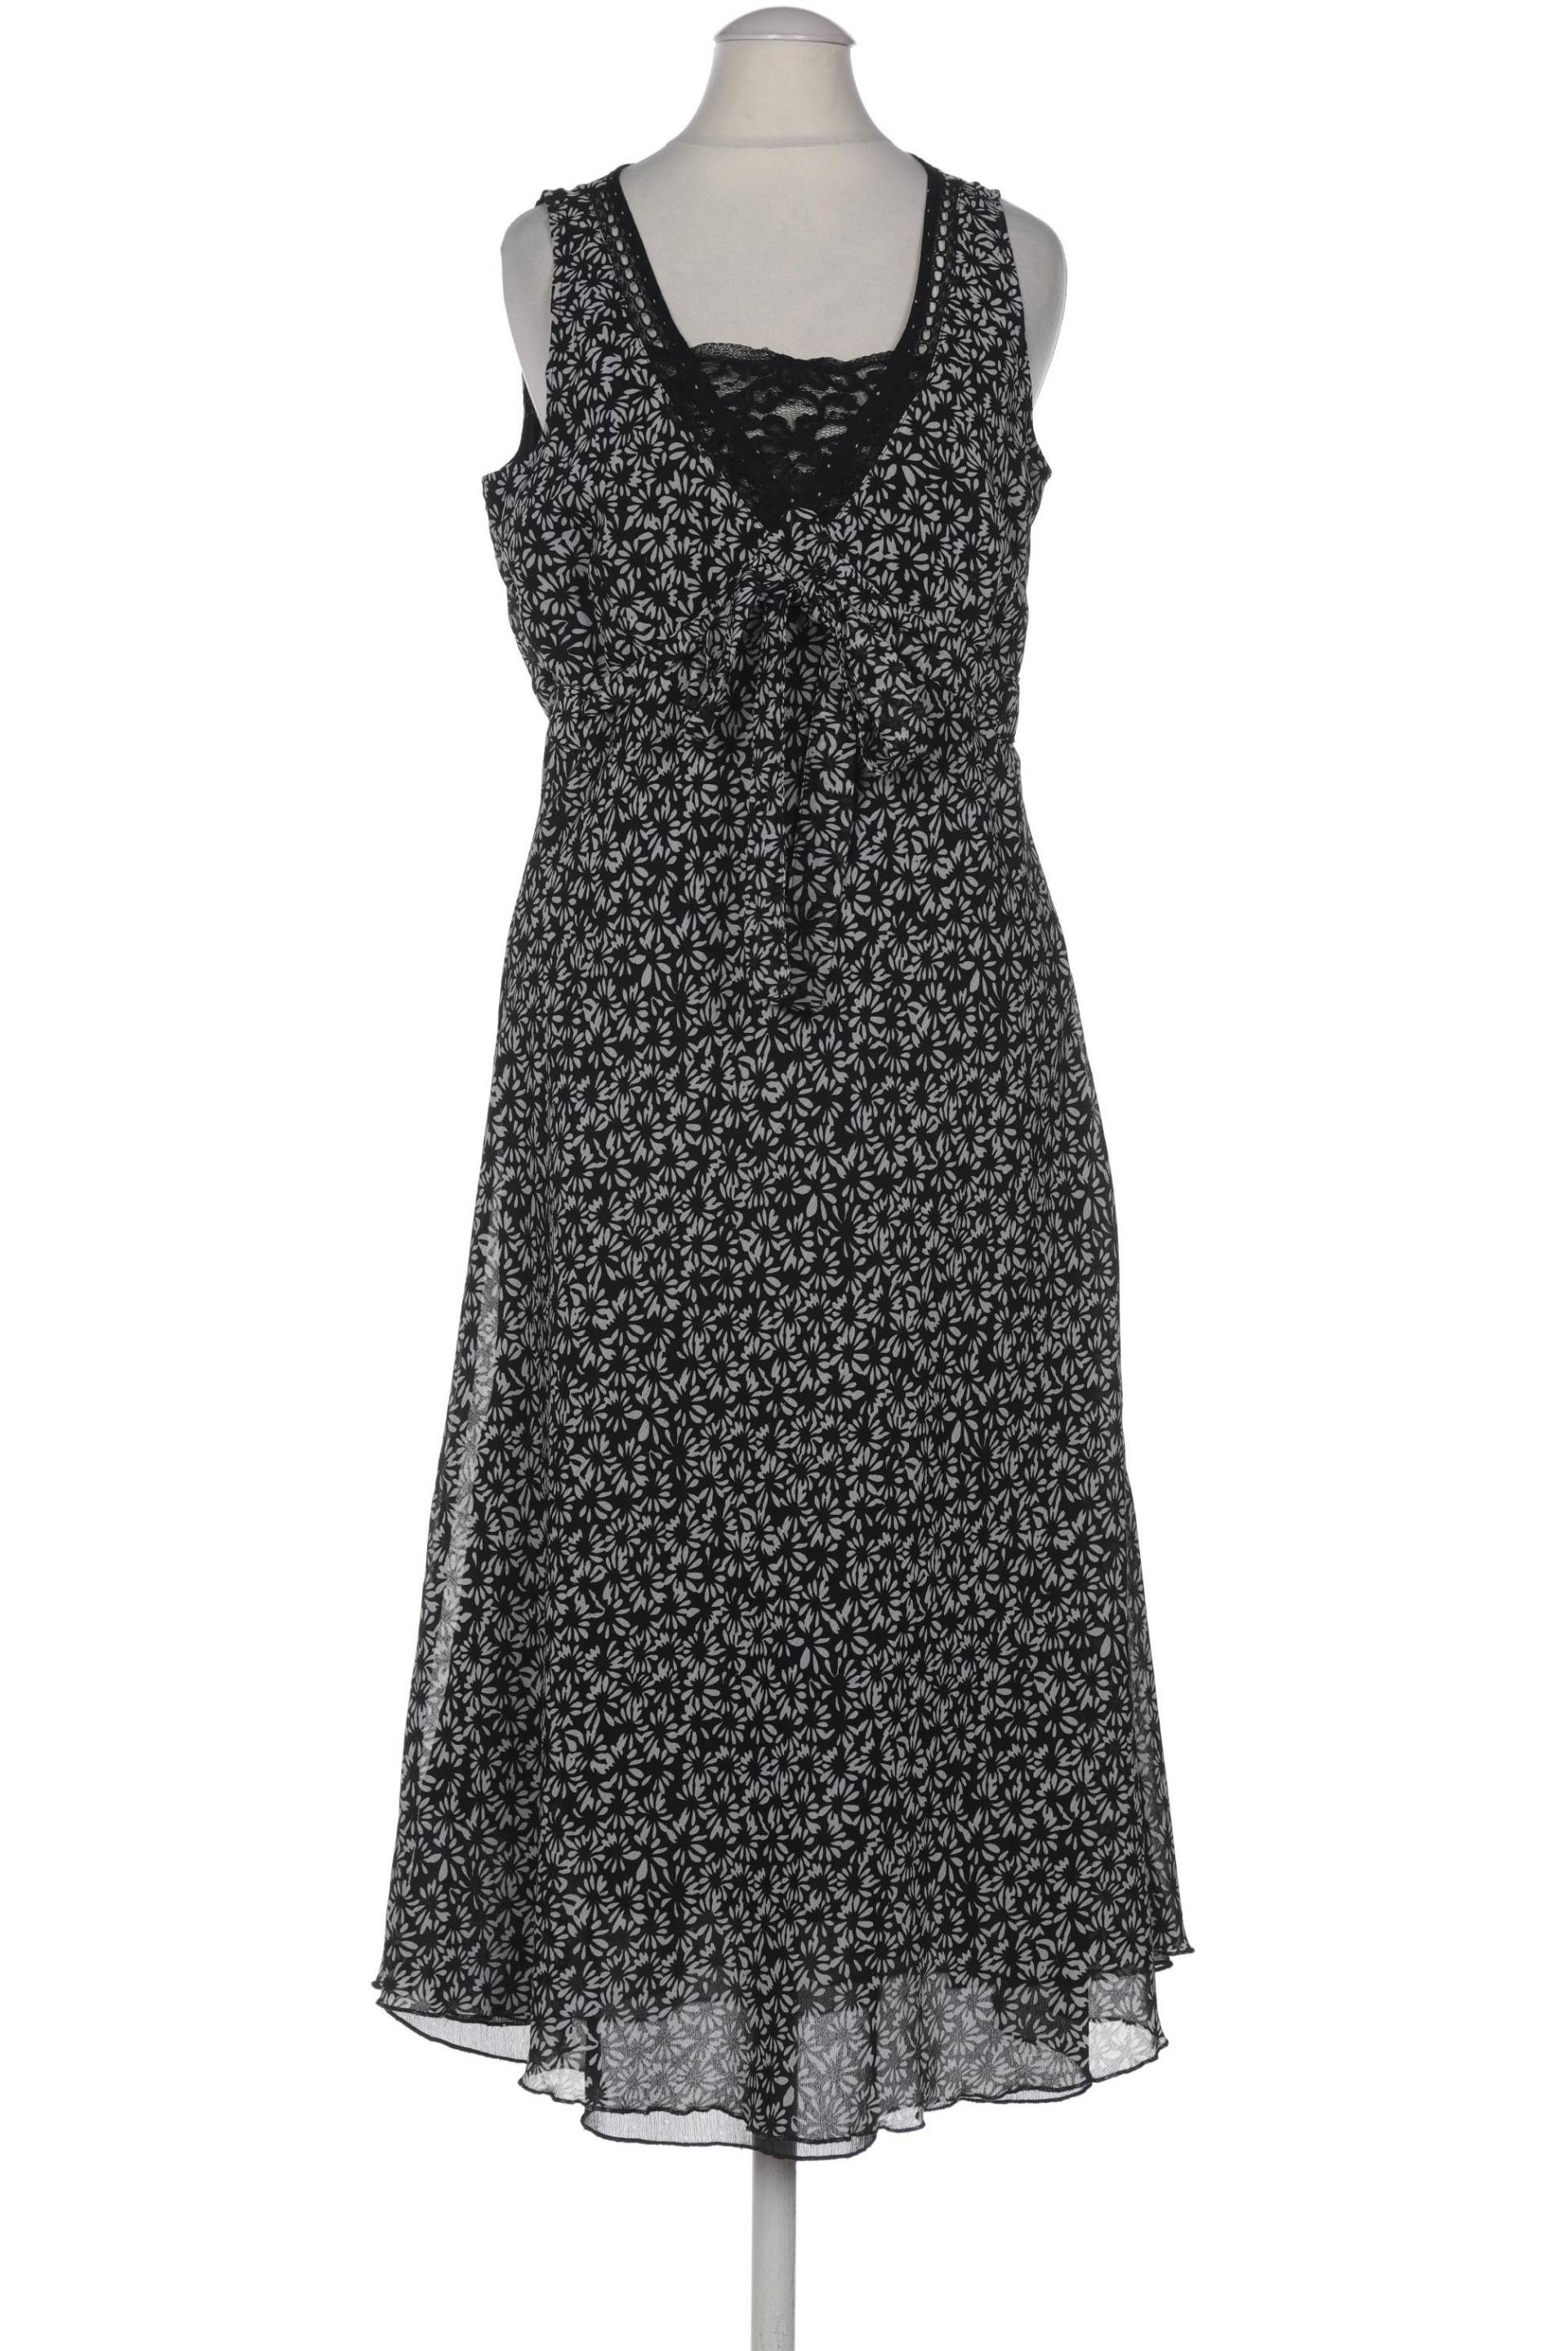 In Linea Damen Kleid, schwarz, Gr. 36 von In Linea